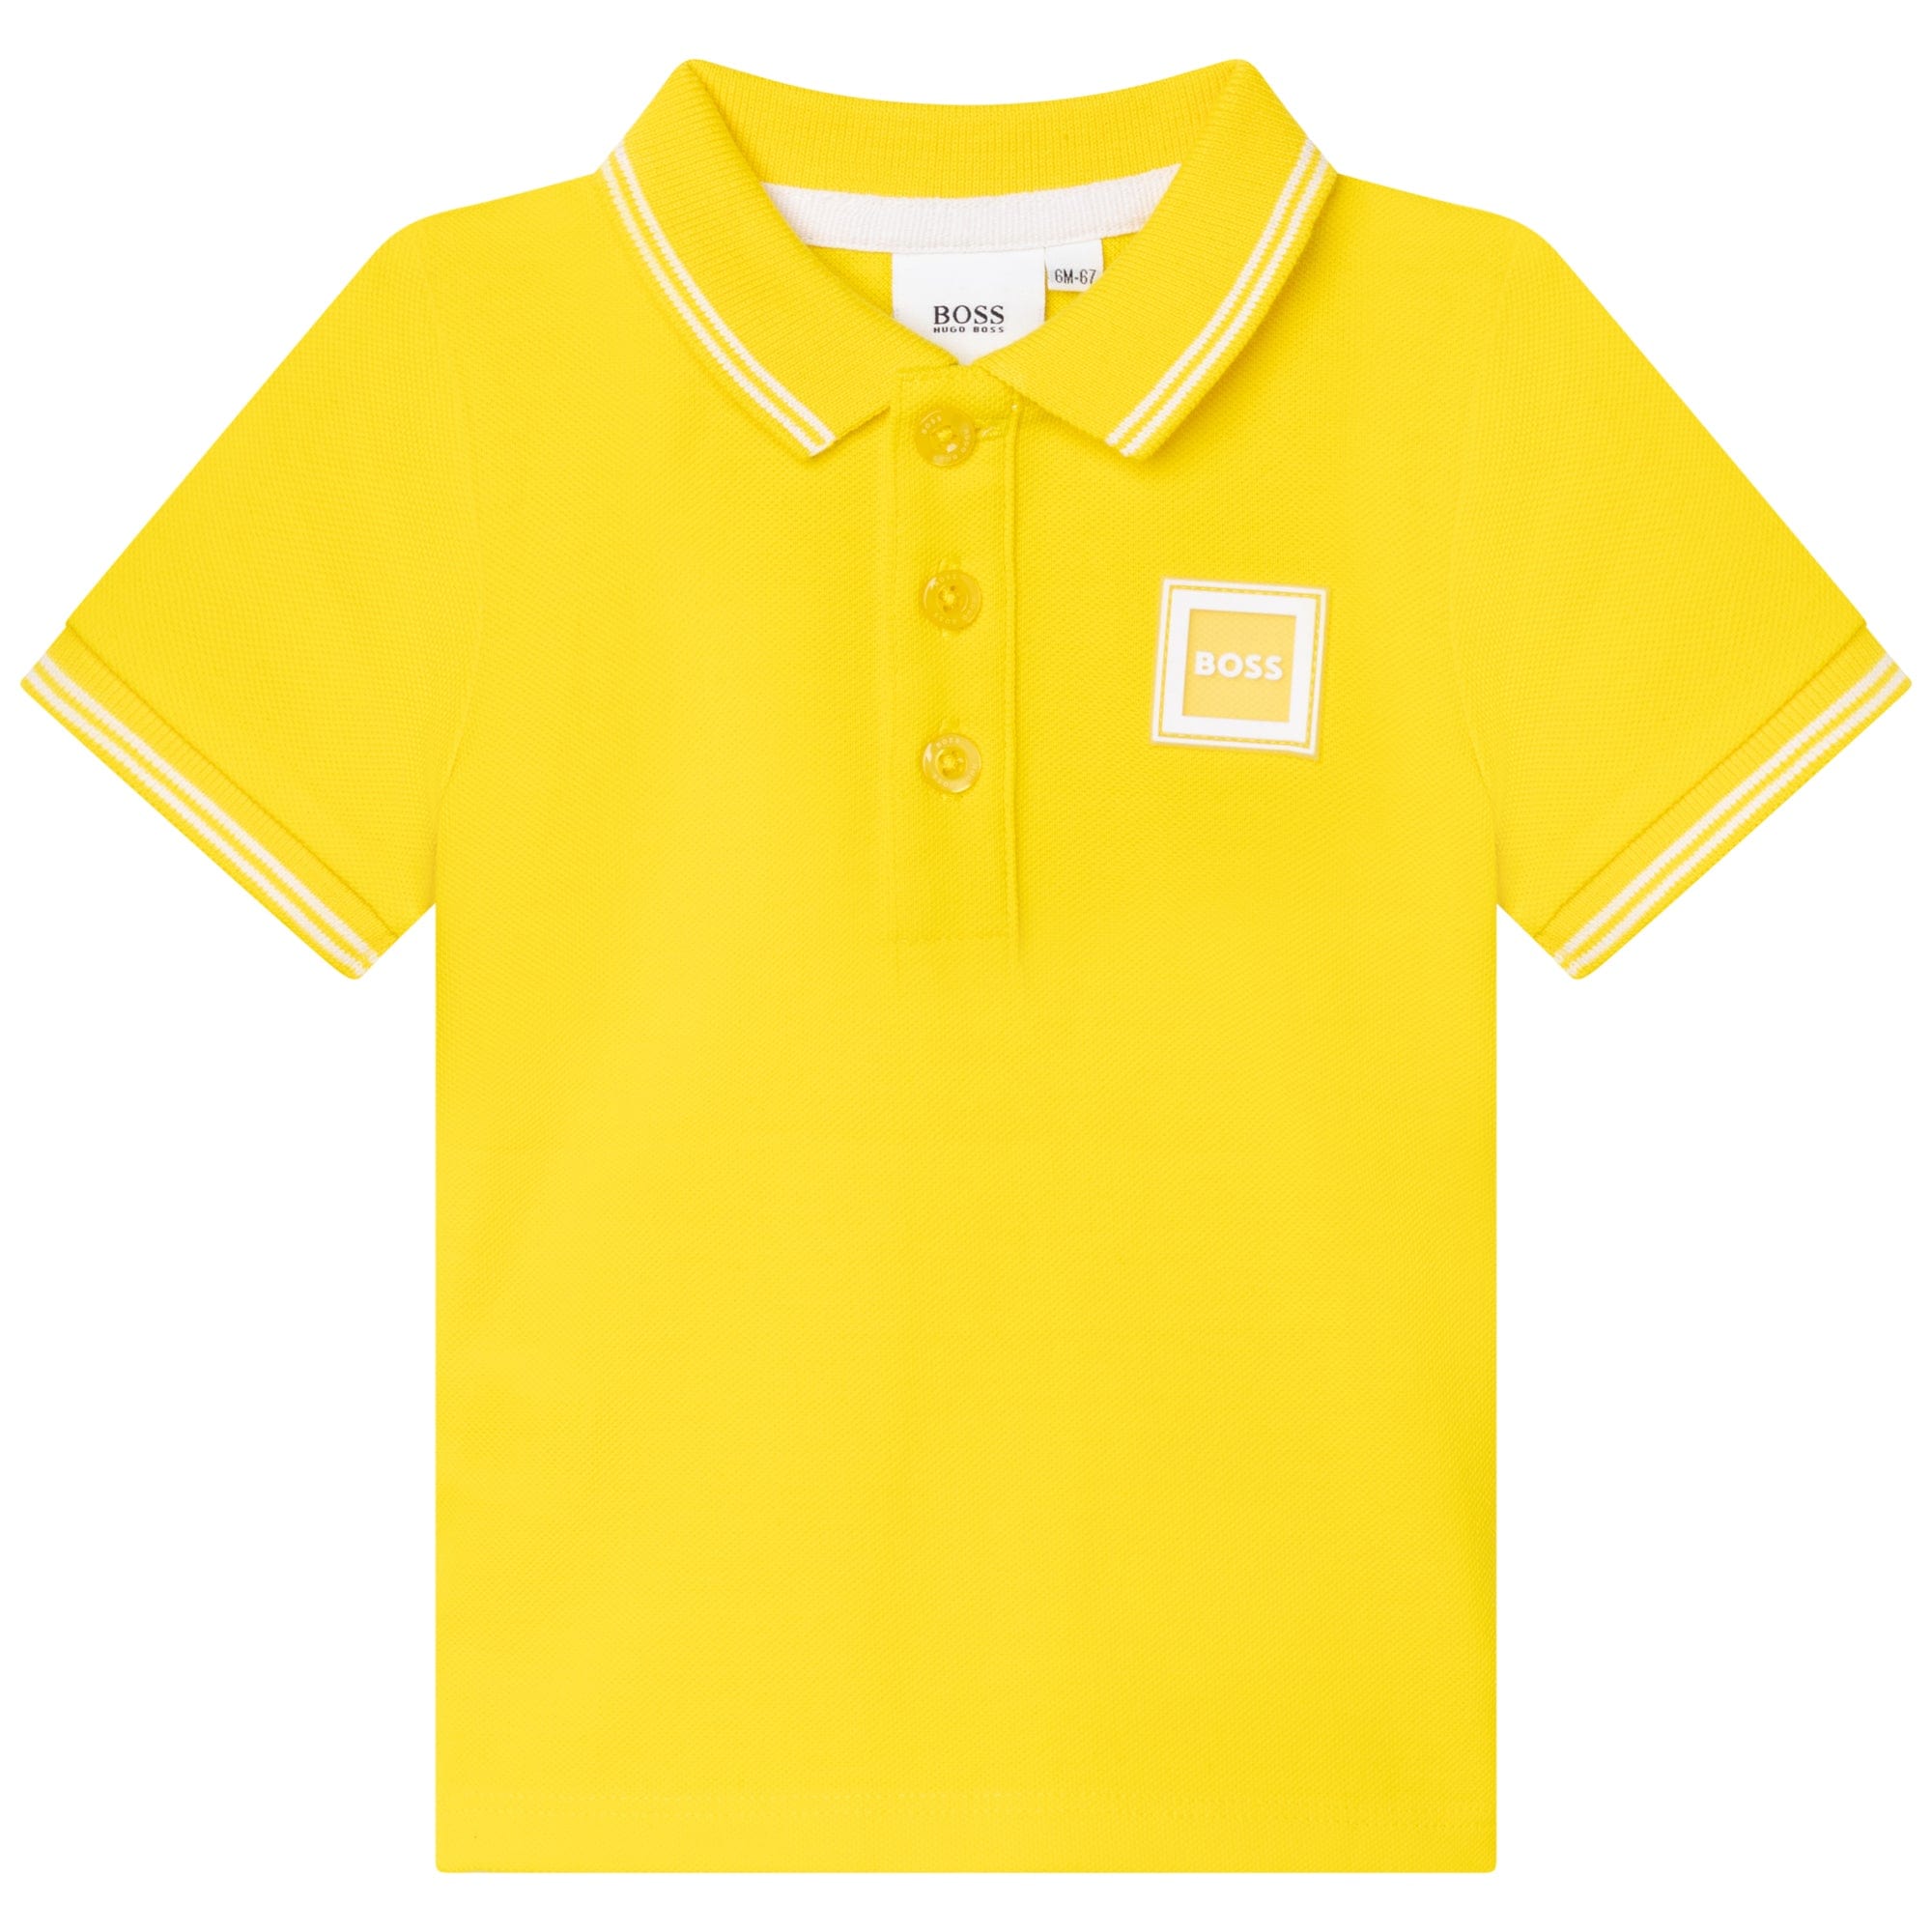 HUGO BOSS - Polo Shirt - Yellow